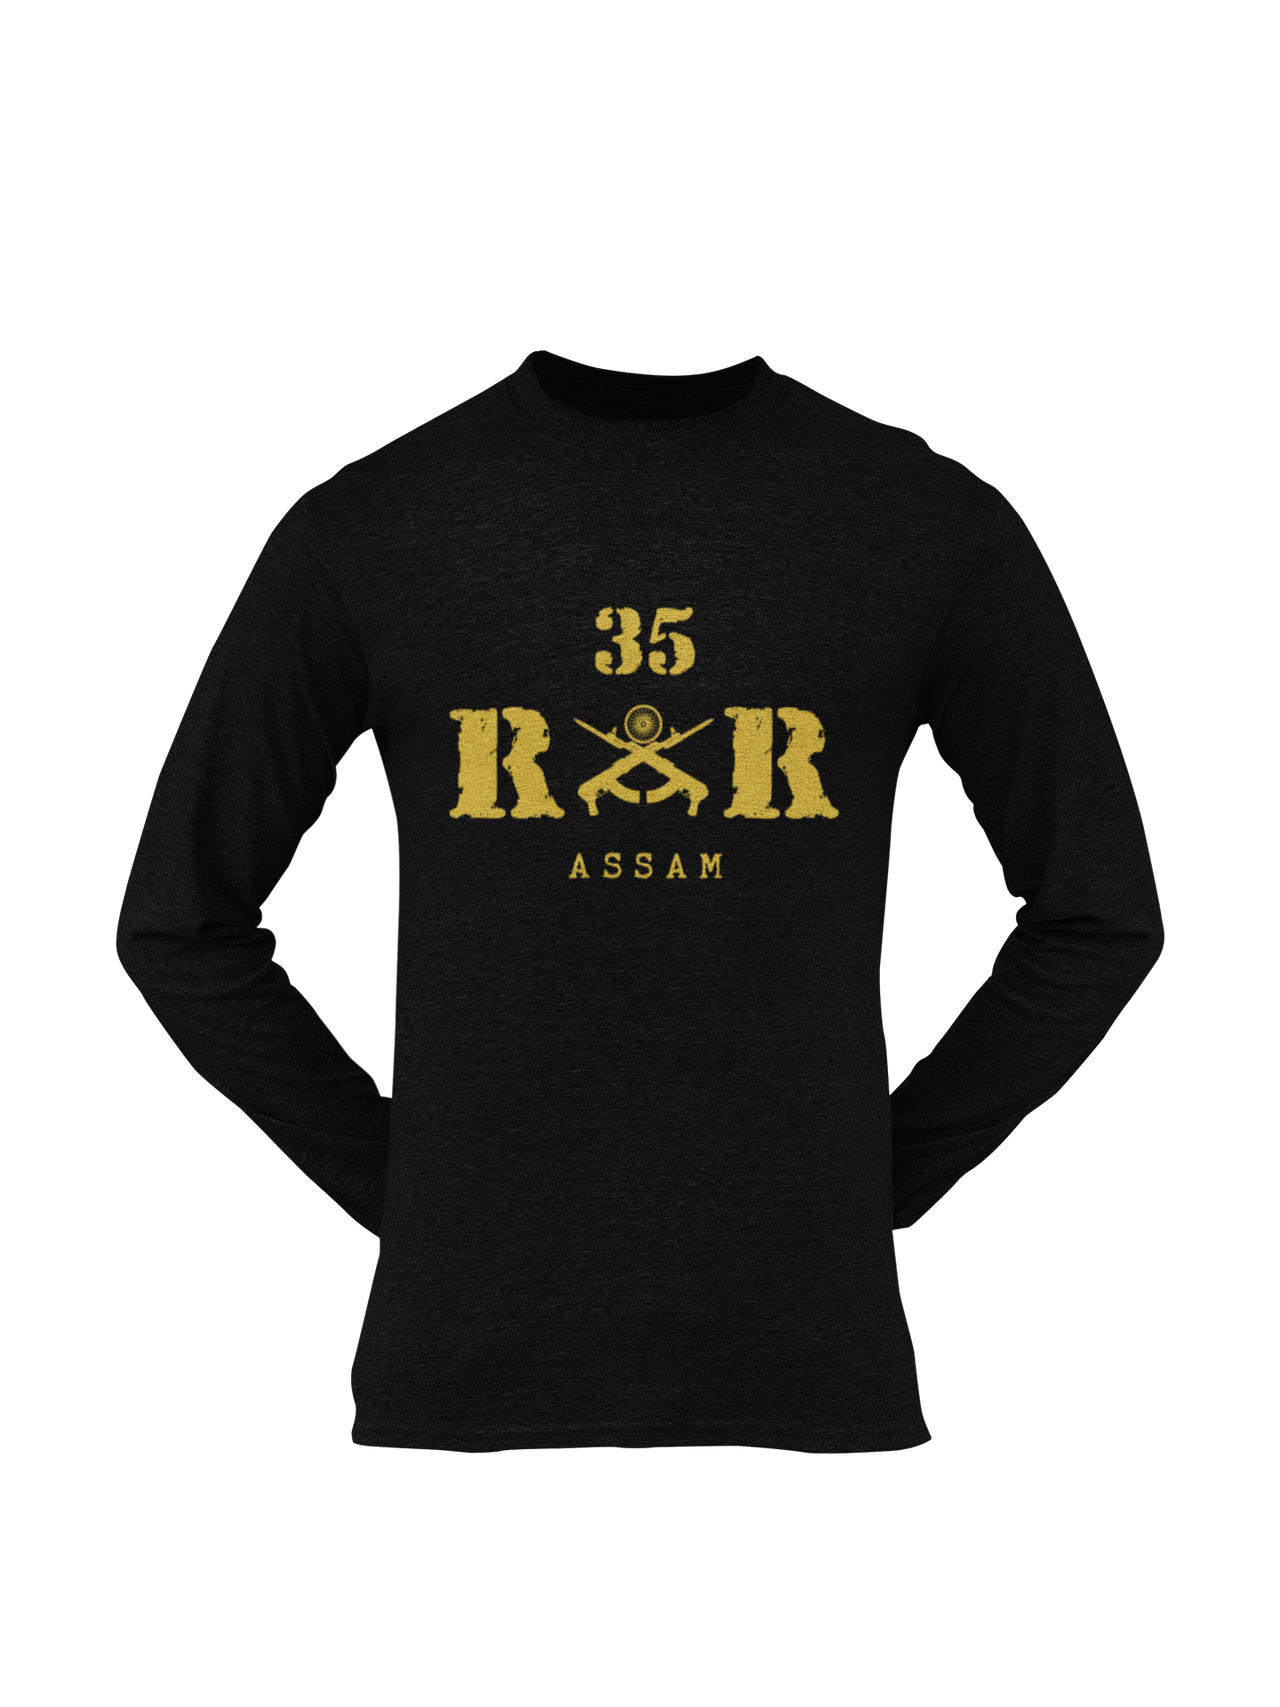 Rashtriya Rifles T-shirt - 35 RR Assam (Men)